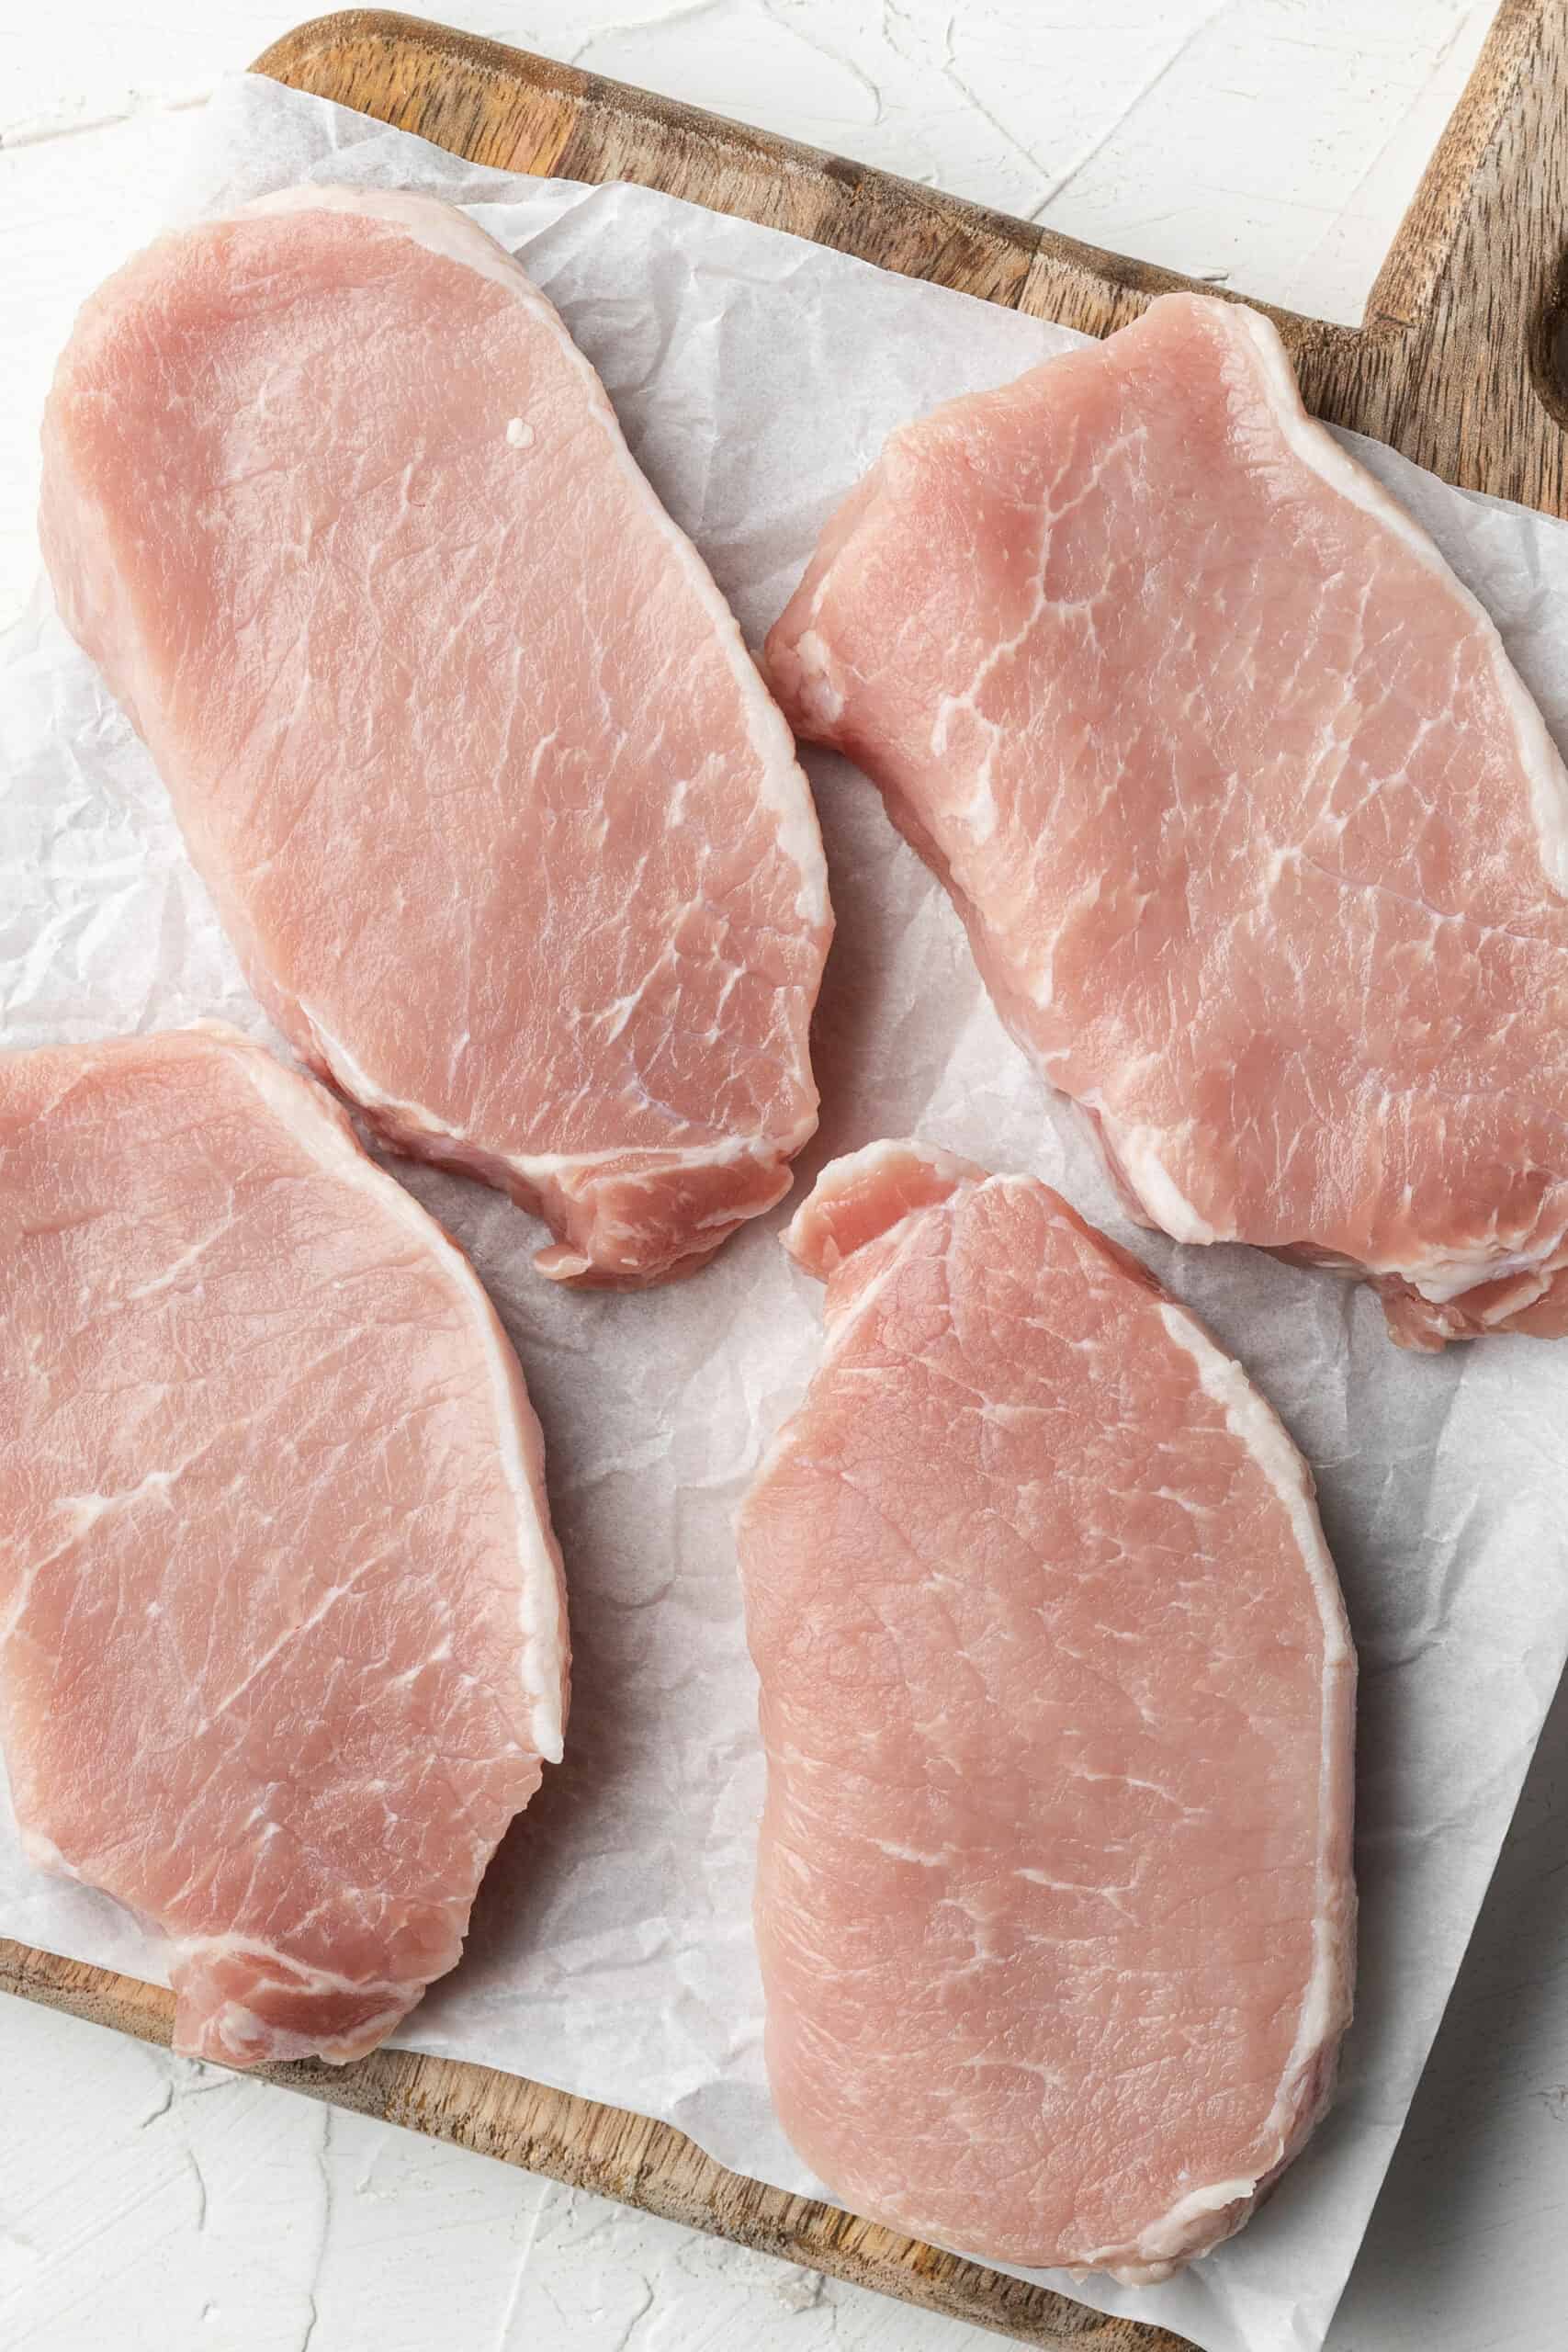 raw pork chops on a cutting board